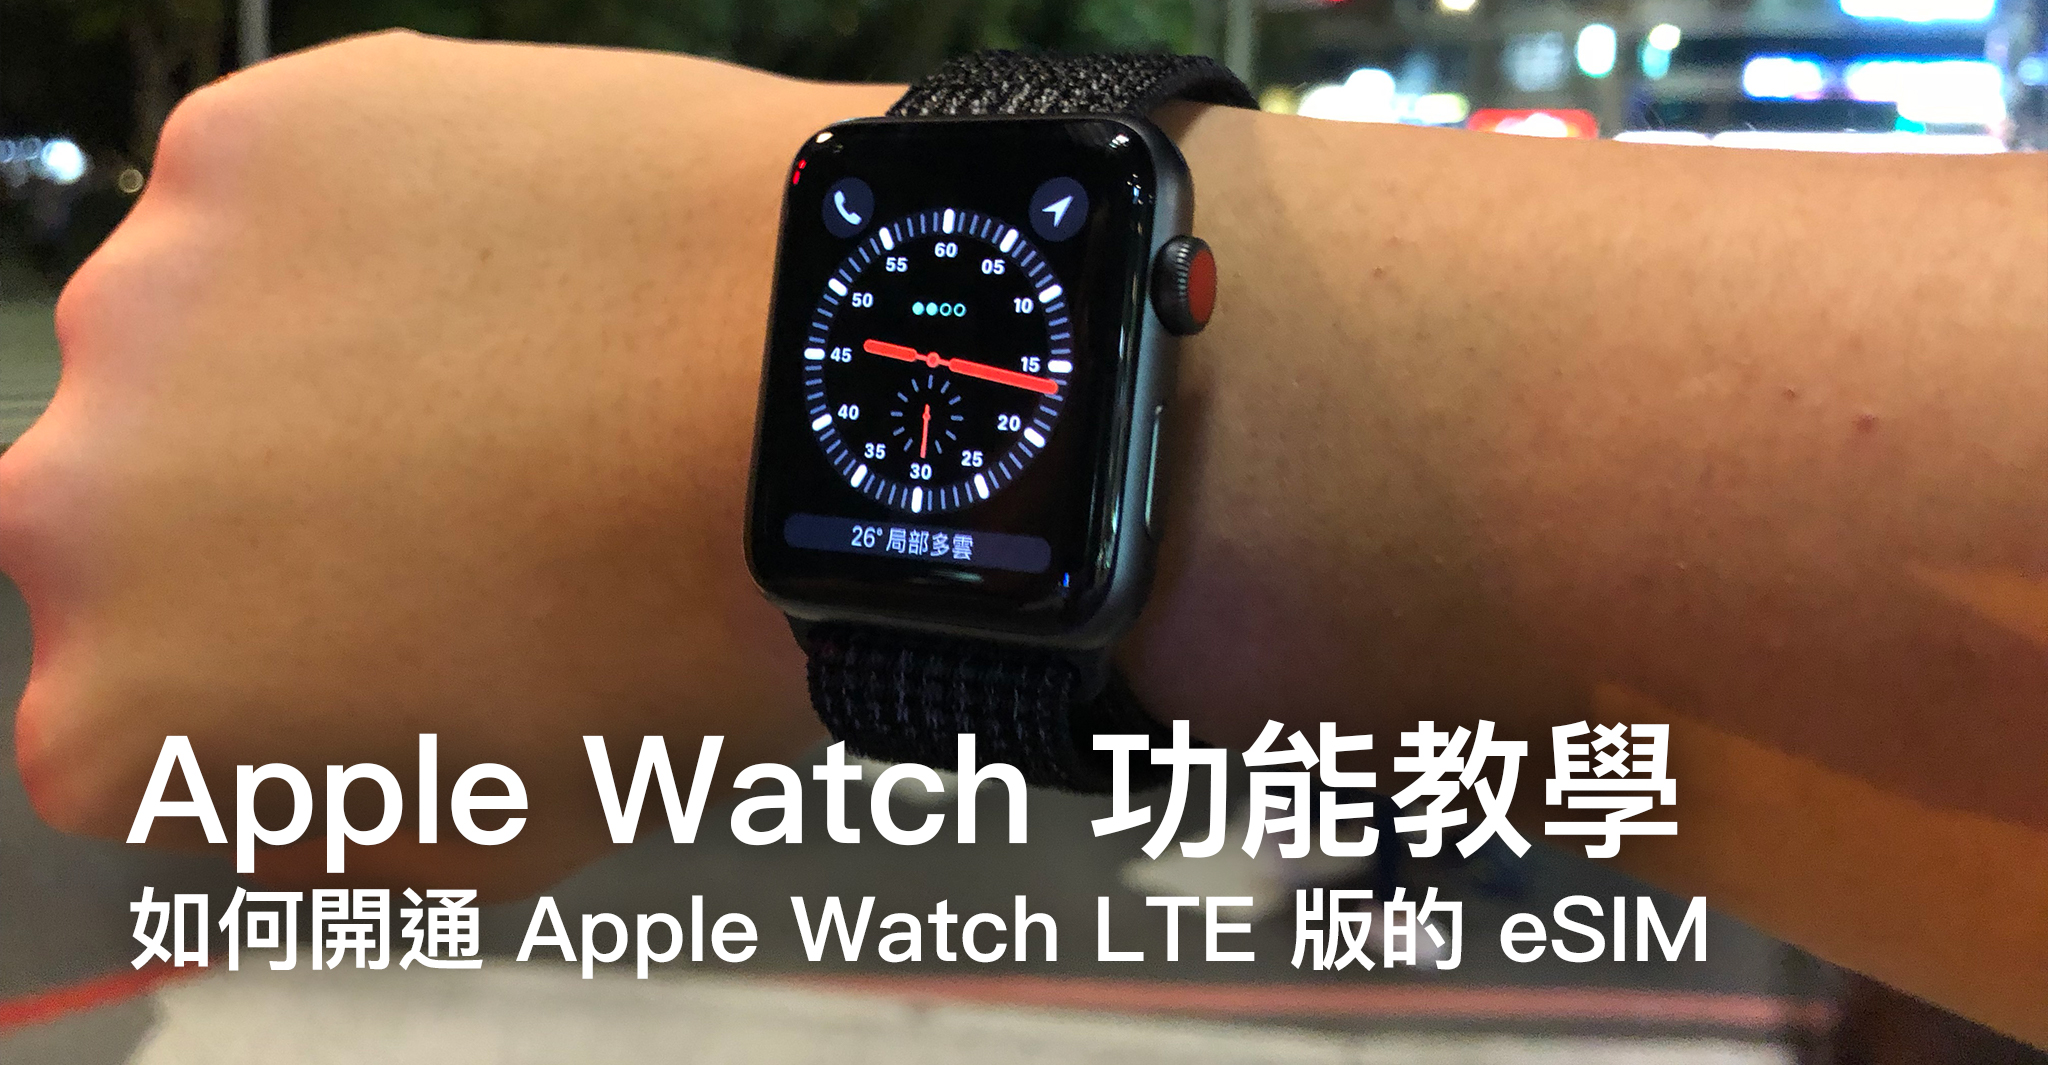 如何開通 Apple Watch LTE 版的 eSIM